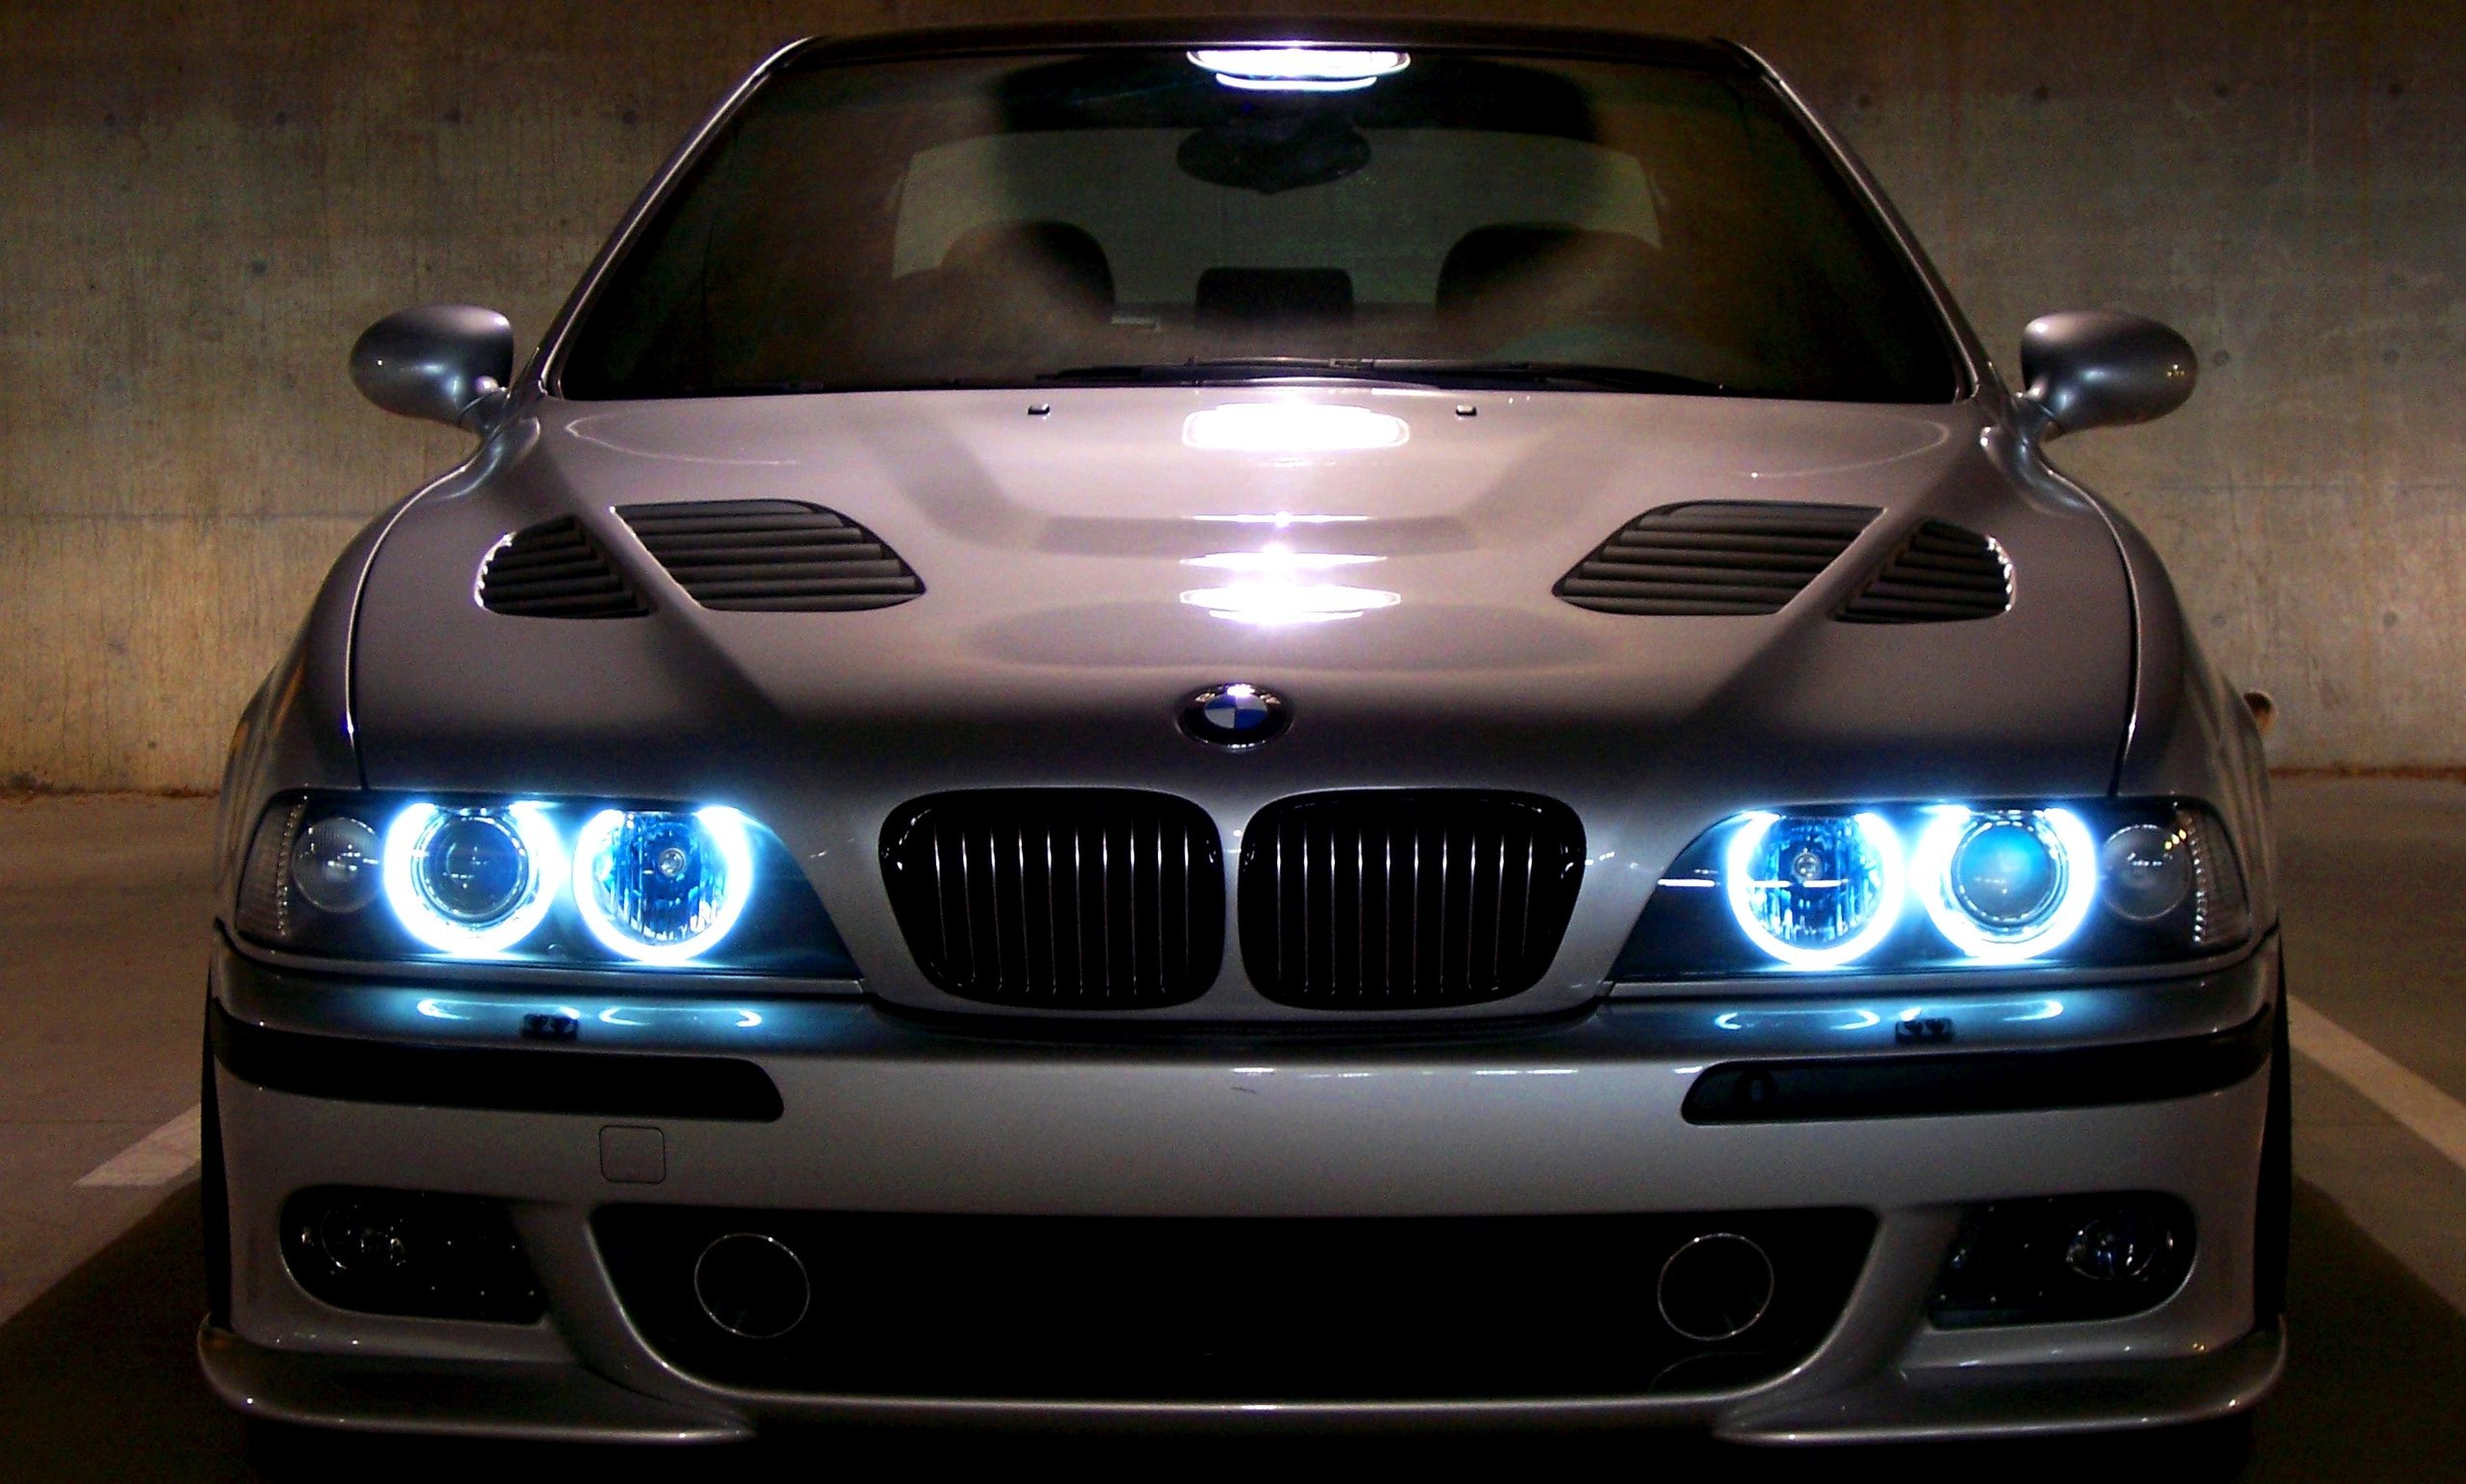    BMW   39 Angels Eyes        bmw  2560x1541 - 